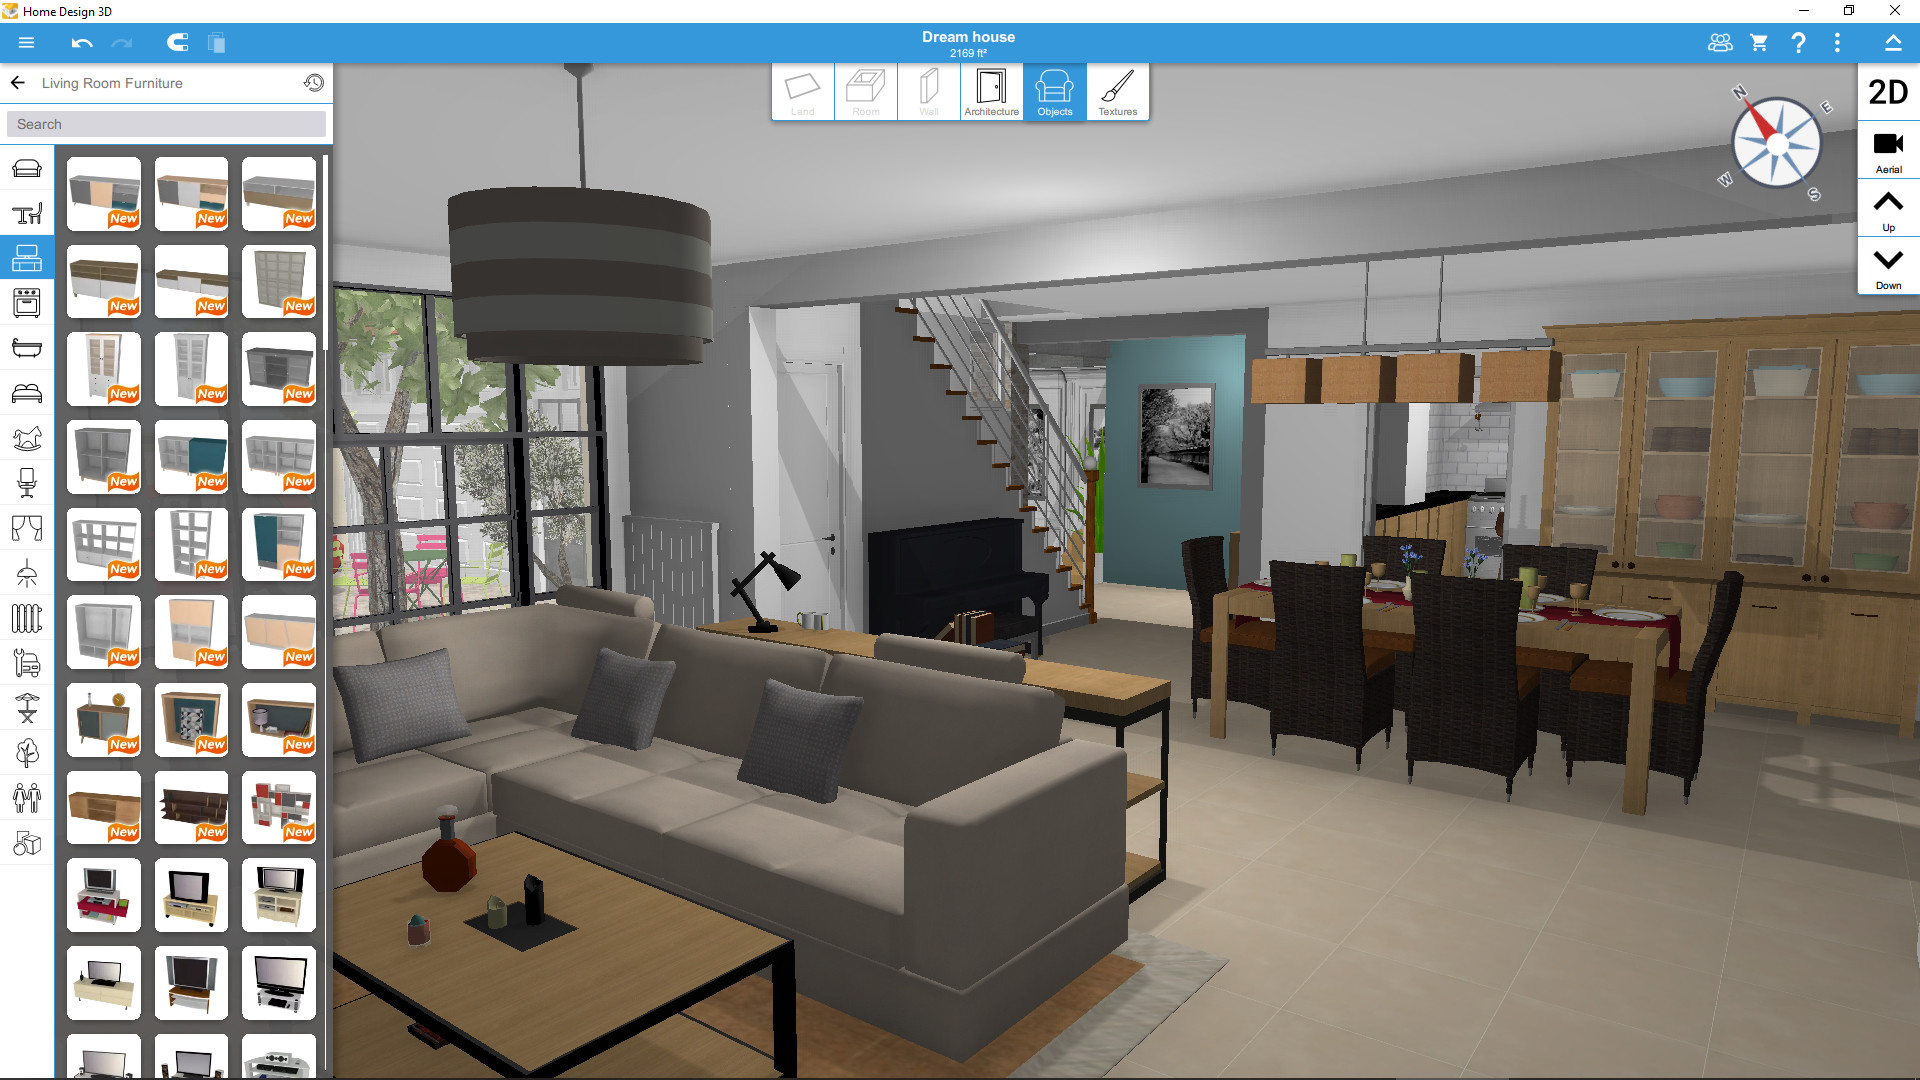 Игра Дизайн дома: Украсить дом онлайн - играть бесплатно, без регистрации